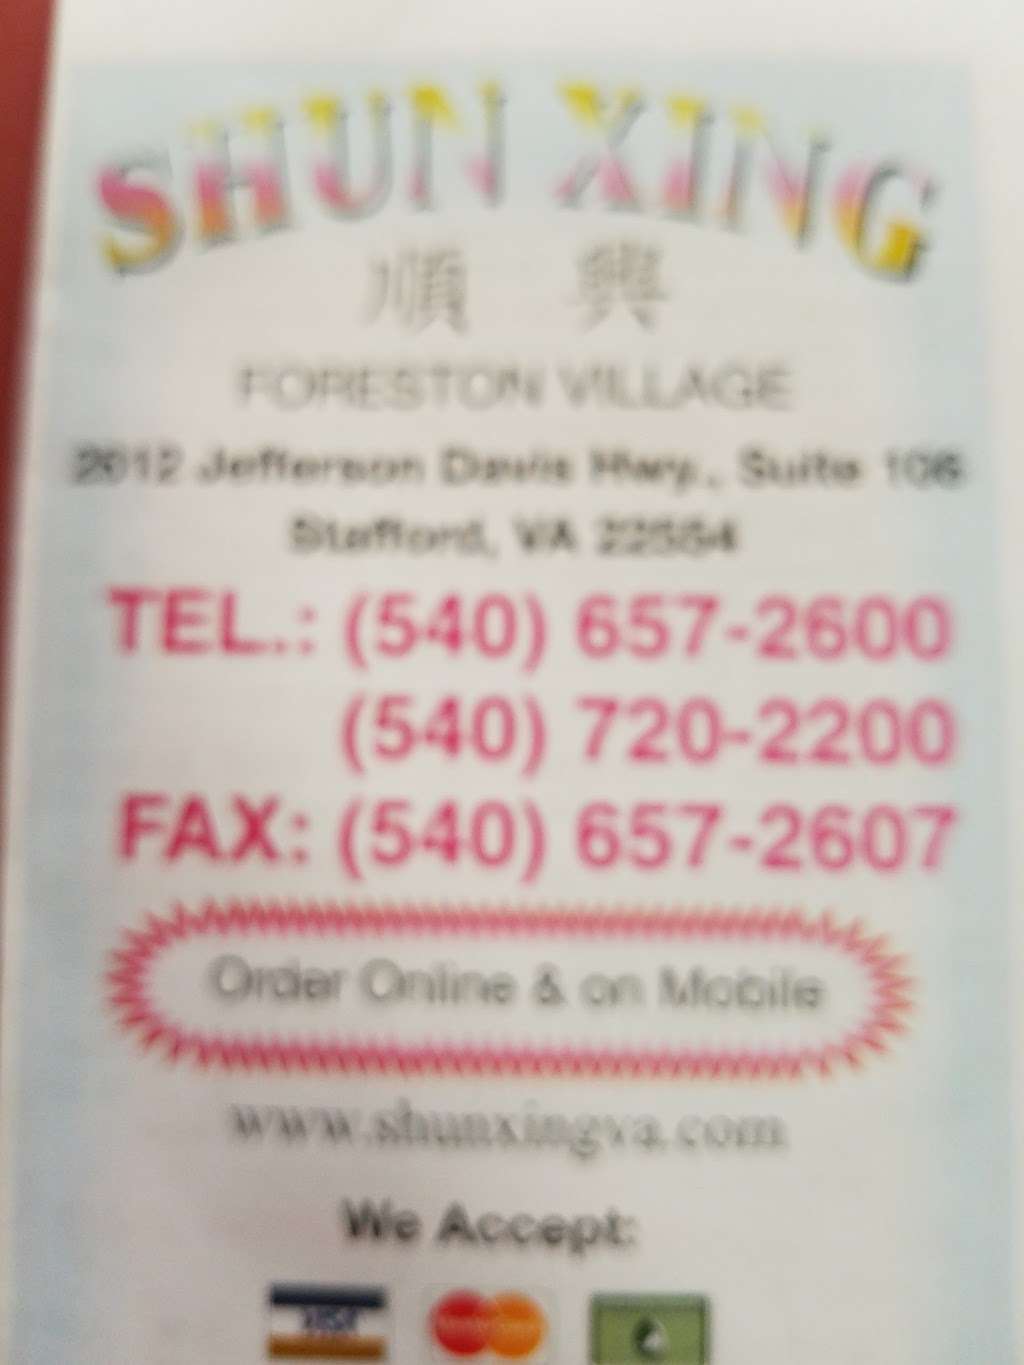 Shunxing Chinese Restaurant | 2612 Jefferson Davis Hwy, Stafford, VA 22554, USA | Phone: (540) 657-2600